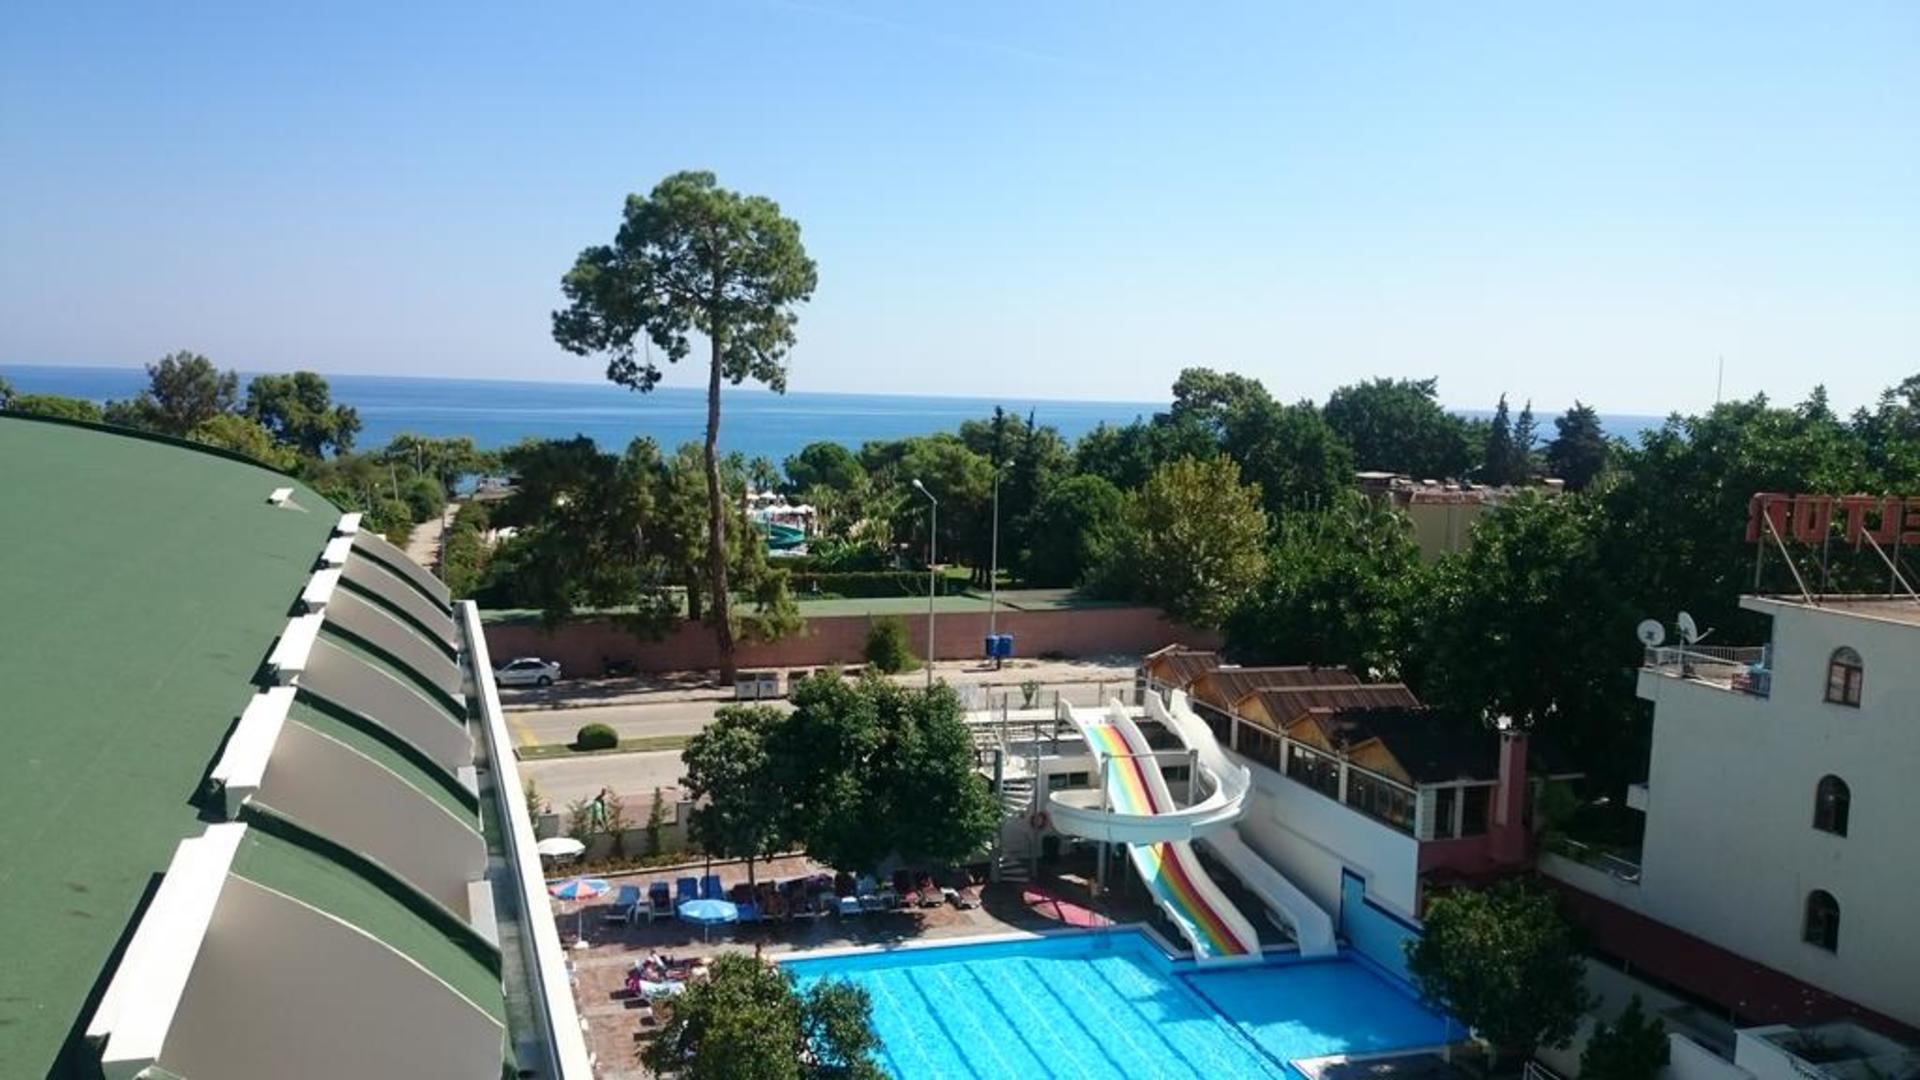 Турция отель selcukhan hotel 4 отзывы